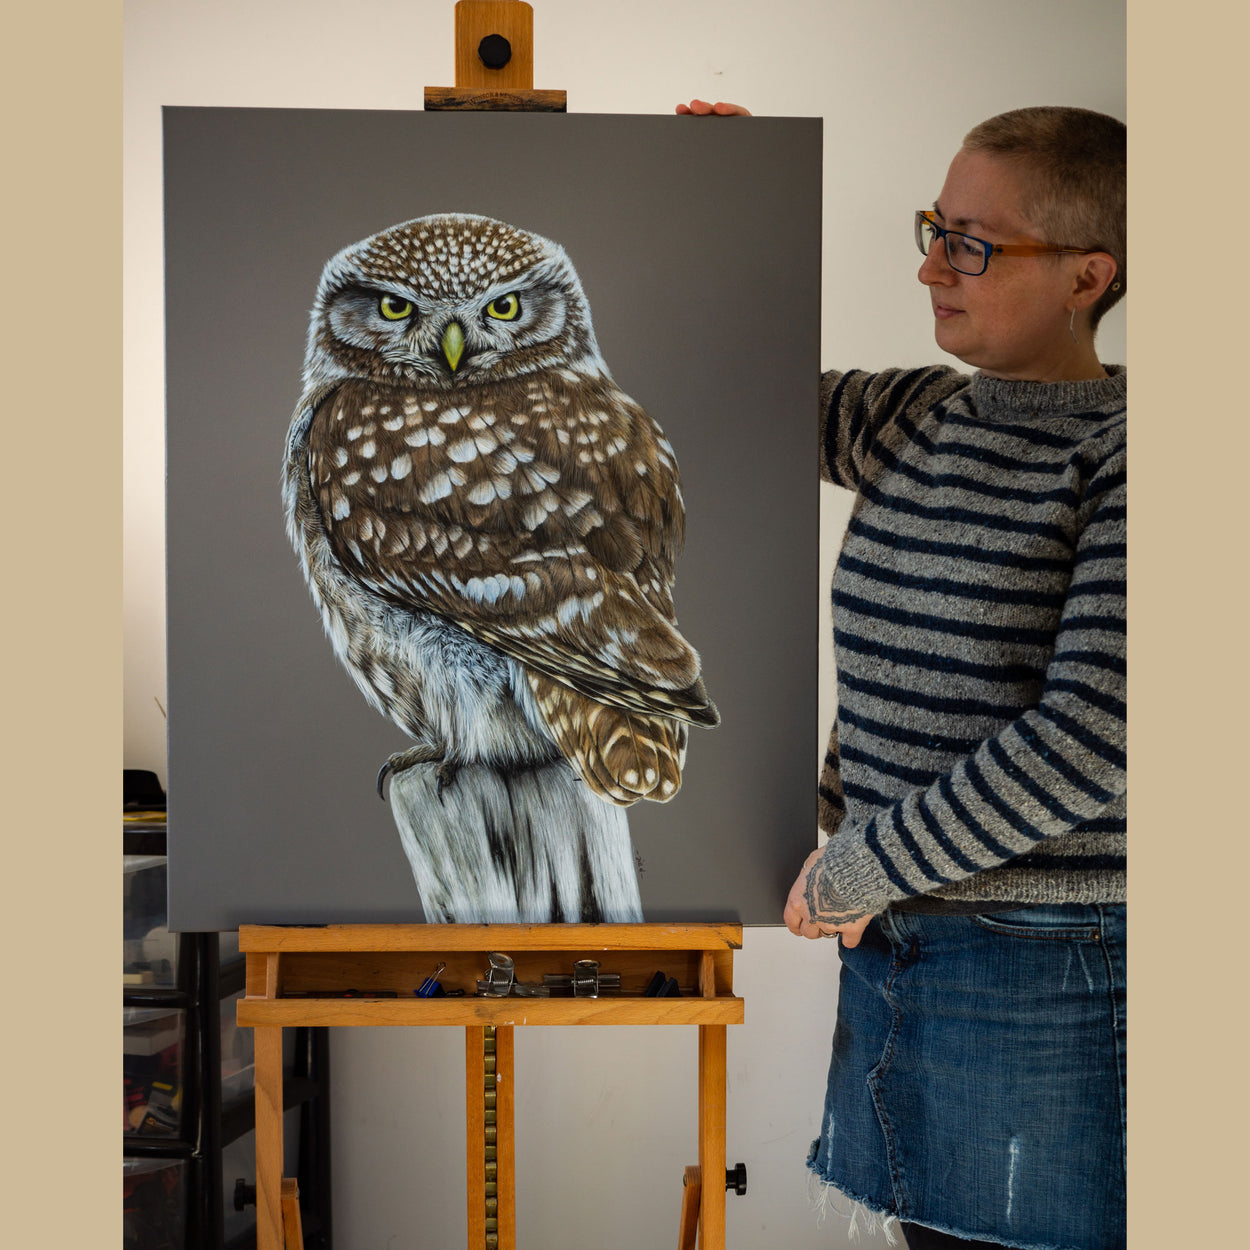 Bird artist Jill Dimond stood next to a little owl painting on a wooden easel